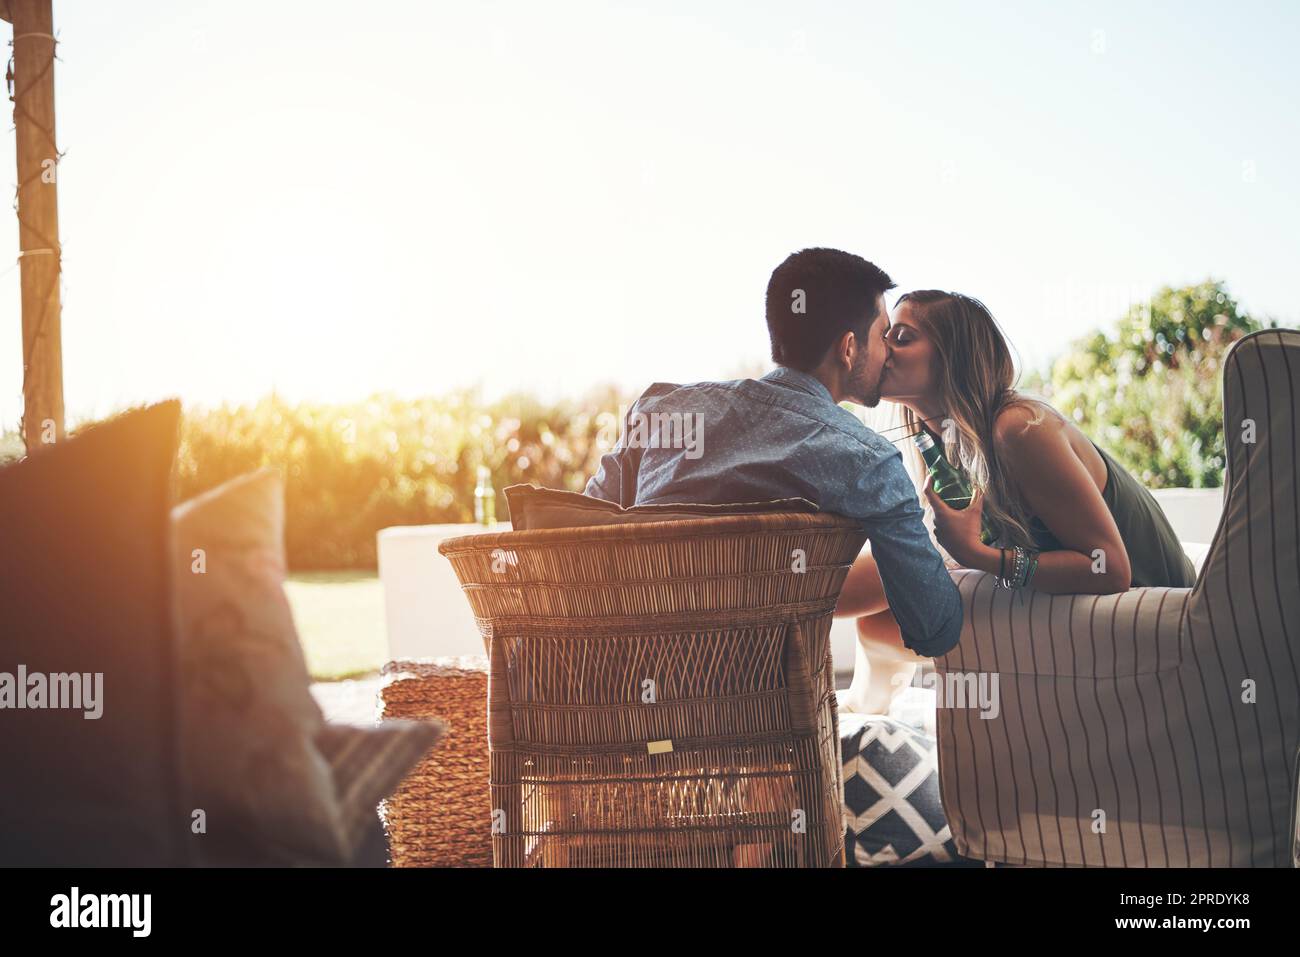 Solo per le labbra. Ripresa di una giovane coppia affettuosa baciandosi mentre si gustano alcune birre sul patio. Foto Stock